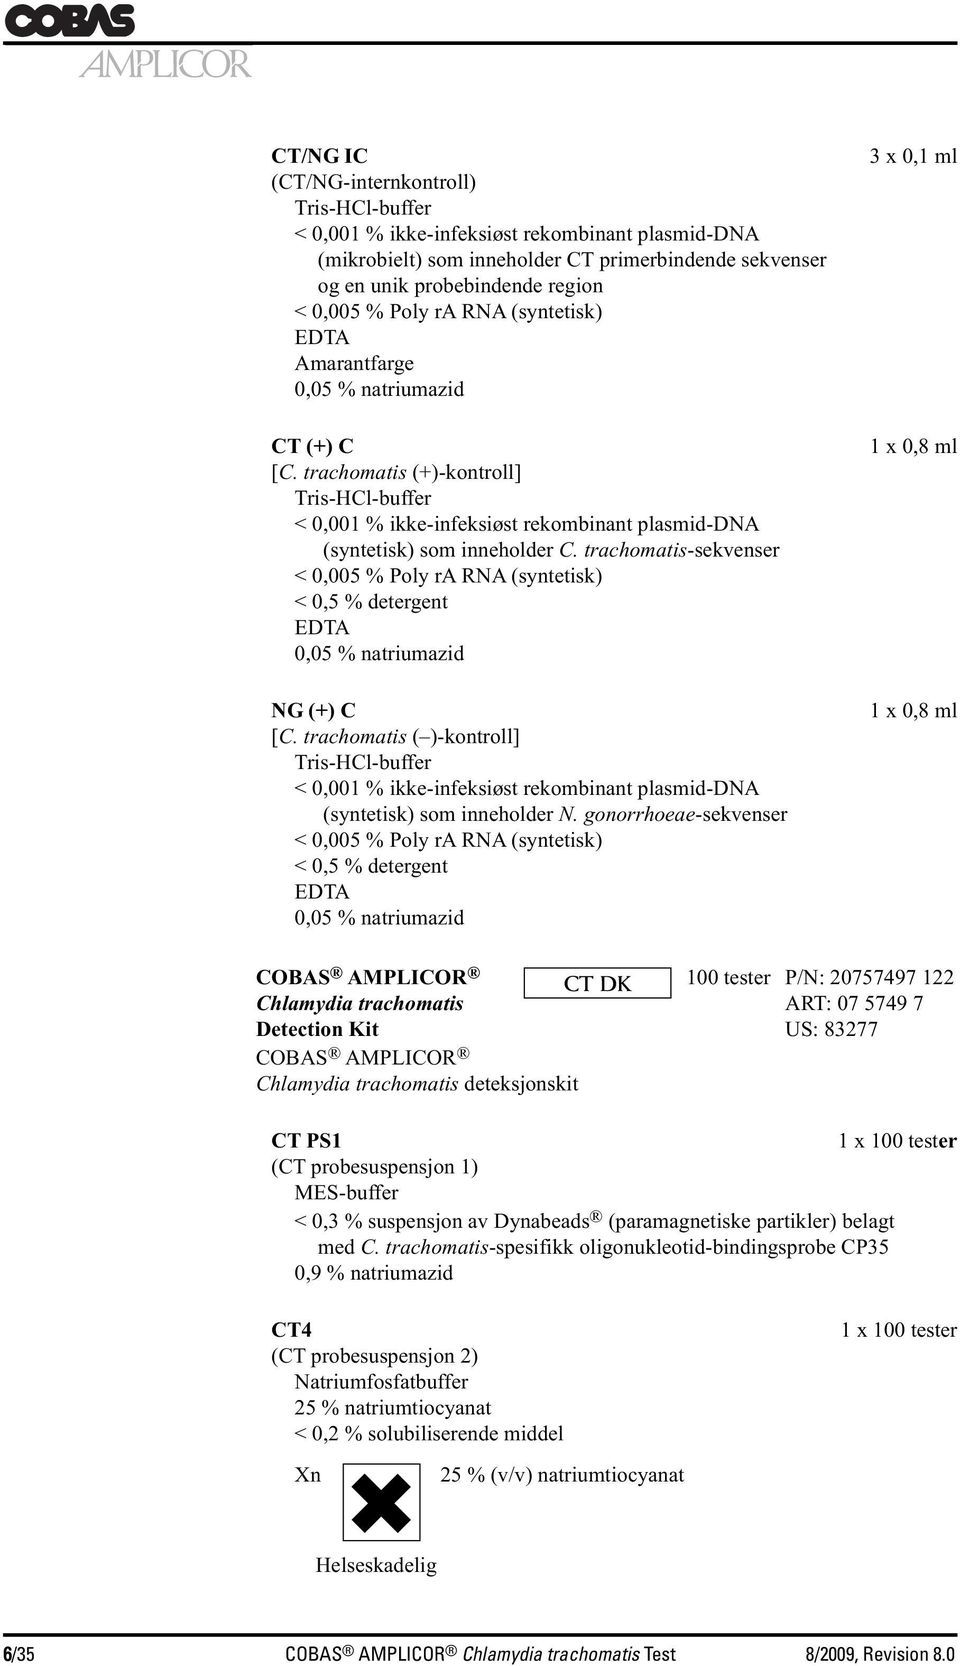 trachomatis-sekvenser < 0,005 % Poly ra RNA (syntetisk) < 0,5 % detergent EDTA 0,05 % natriumazid NG (+) C [C.